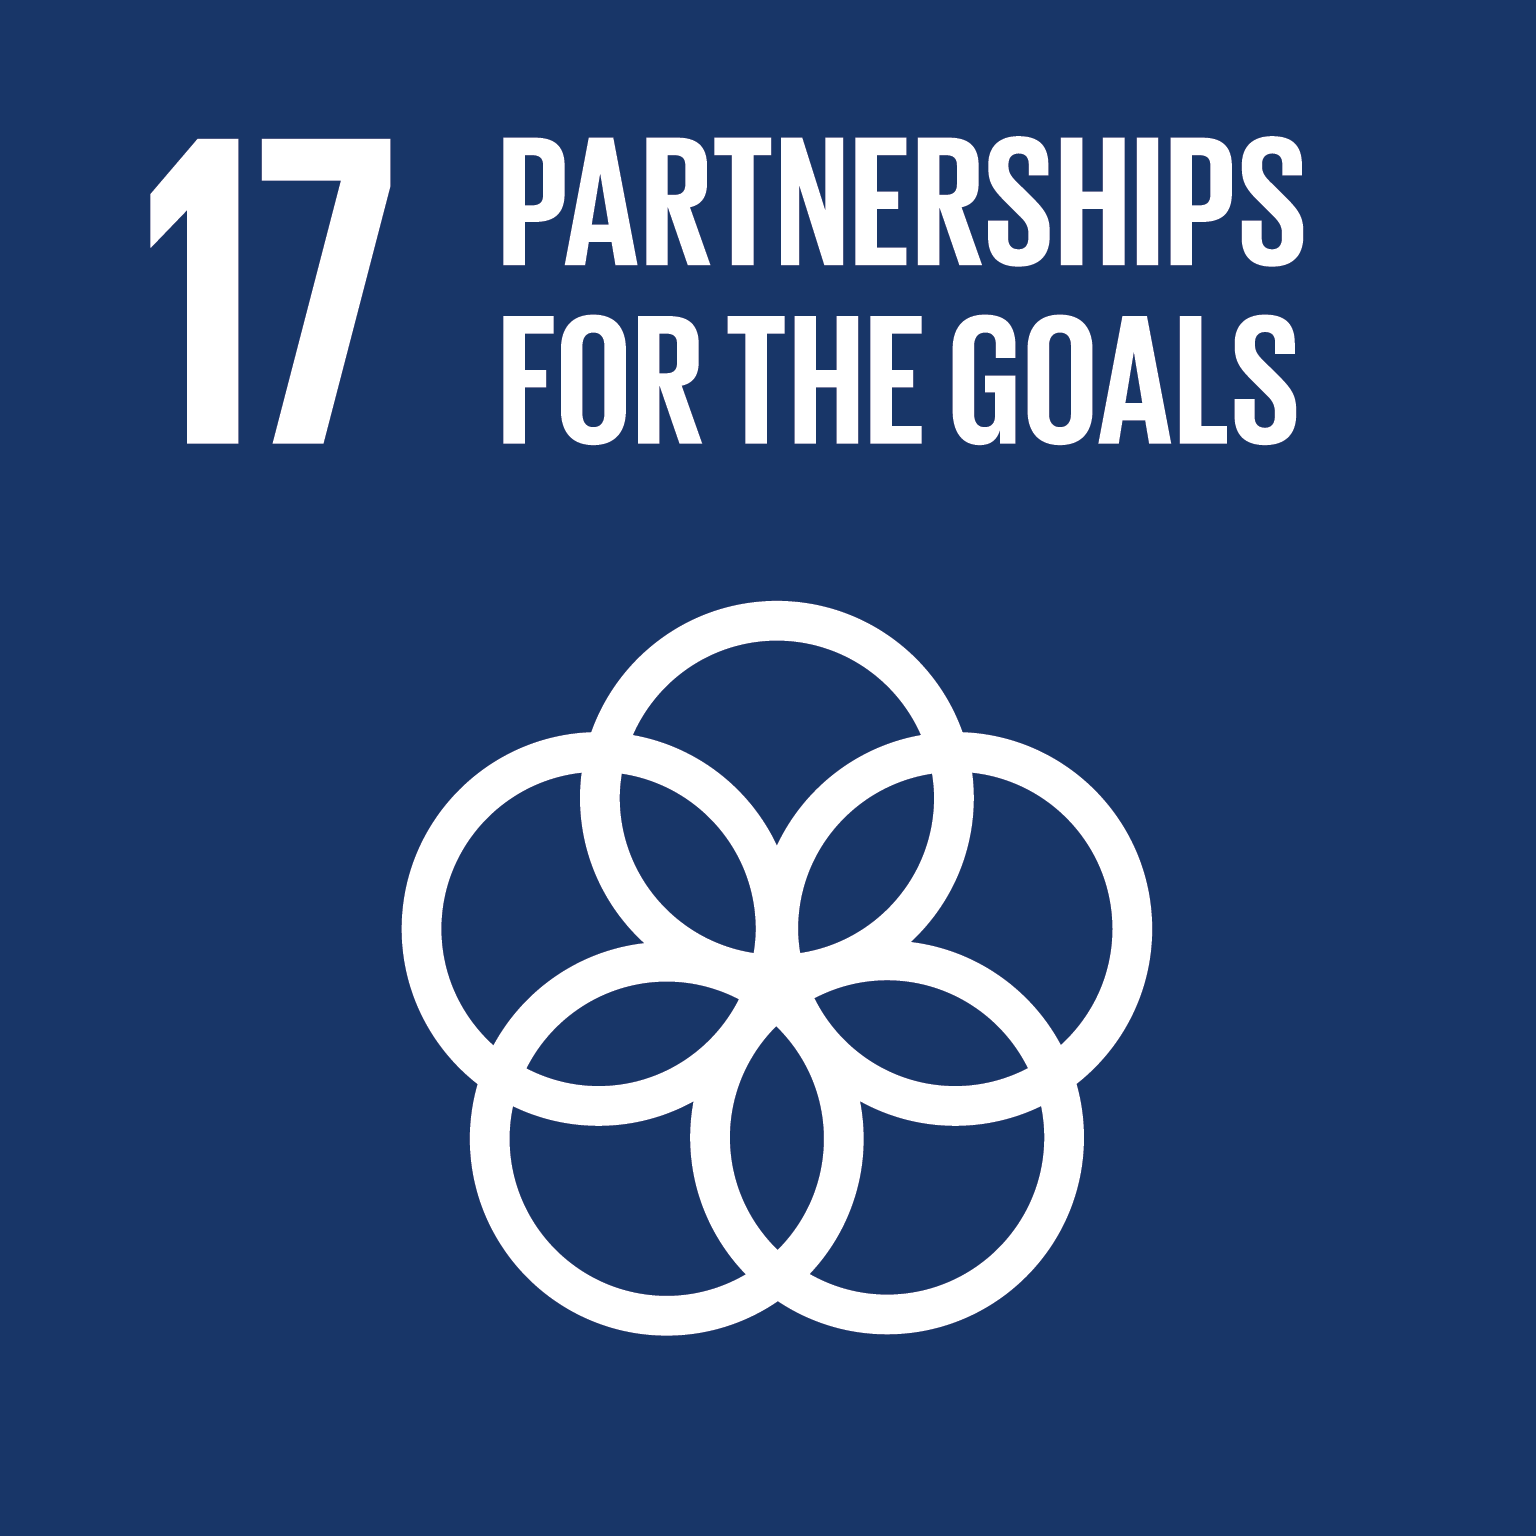 SDG goals 17 partnerships for the goals